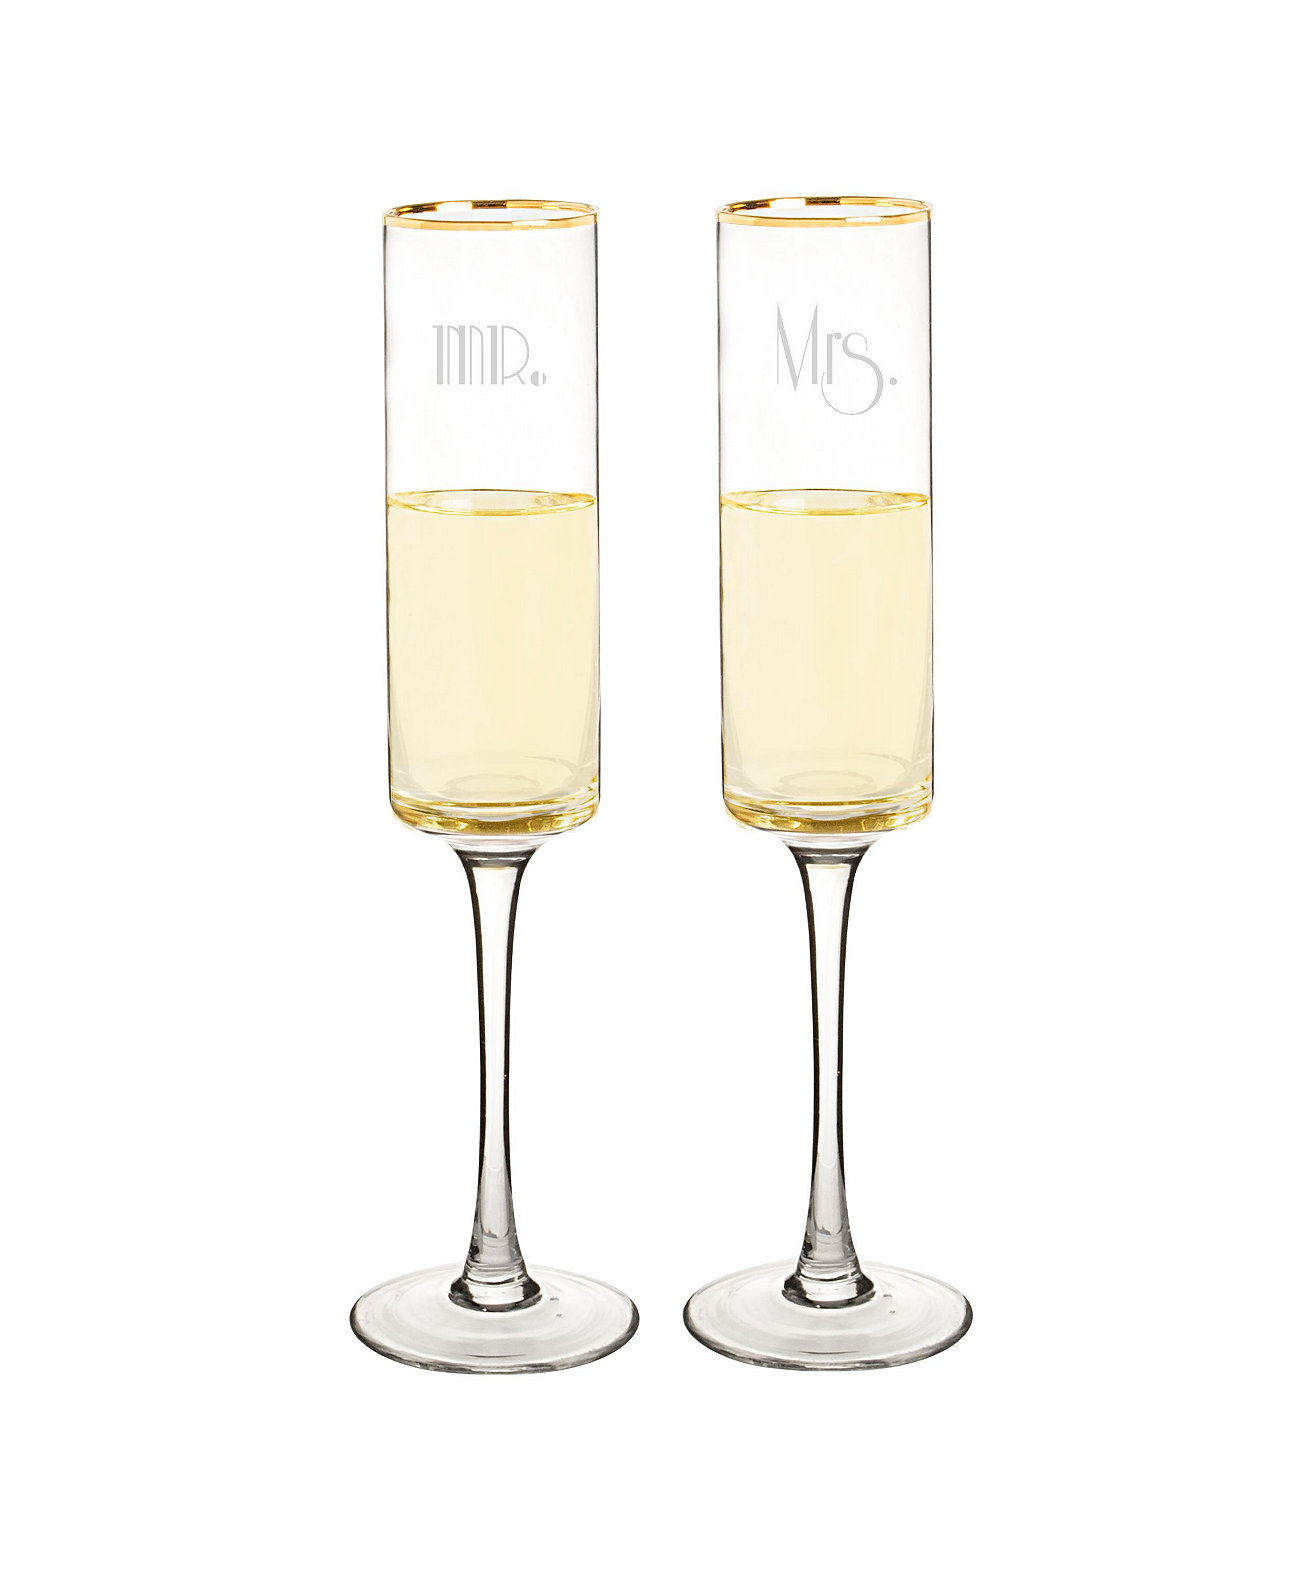 Мистер и миссис 8 унций. Современные бокалы для шампанского Gatsby с золотой оправой Cathy's Concepts